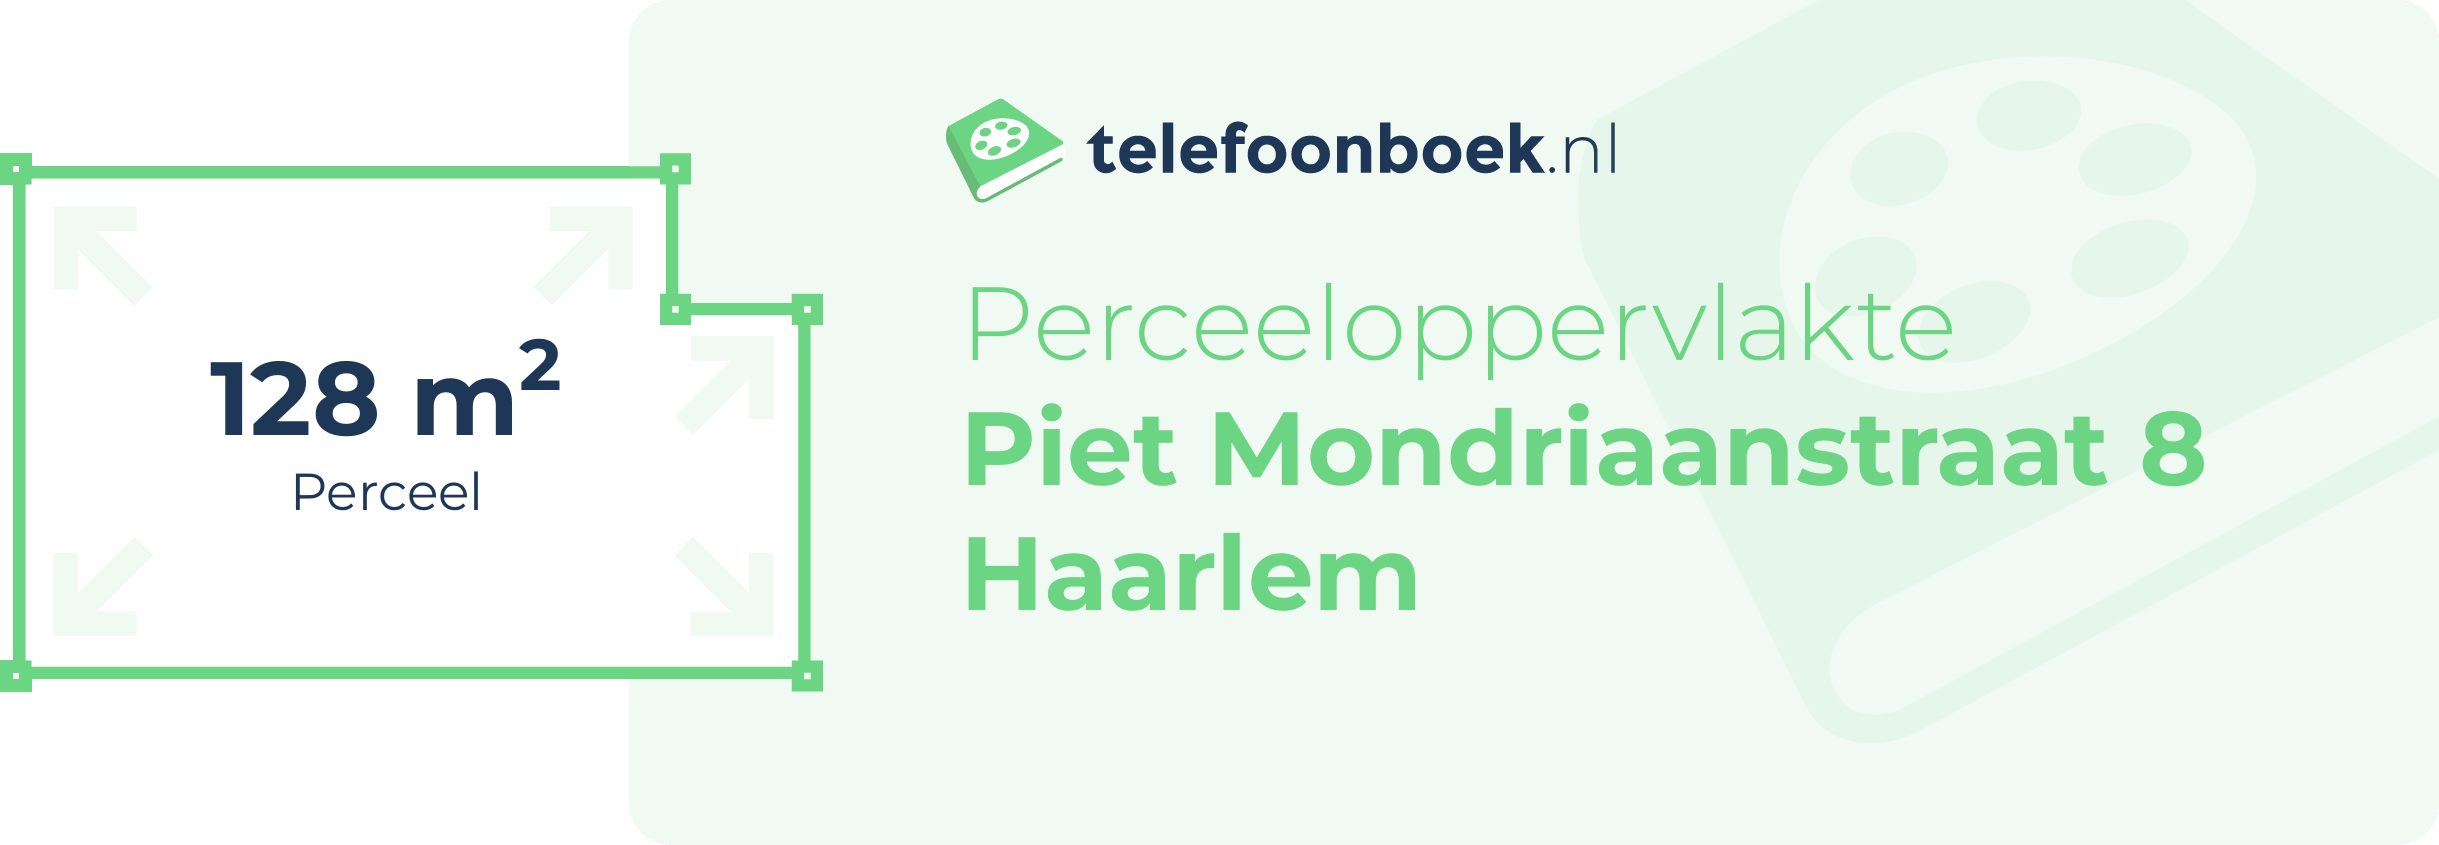 Perceeloppervlakte Piet Mondriaanstraat 8 Haarlem